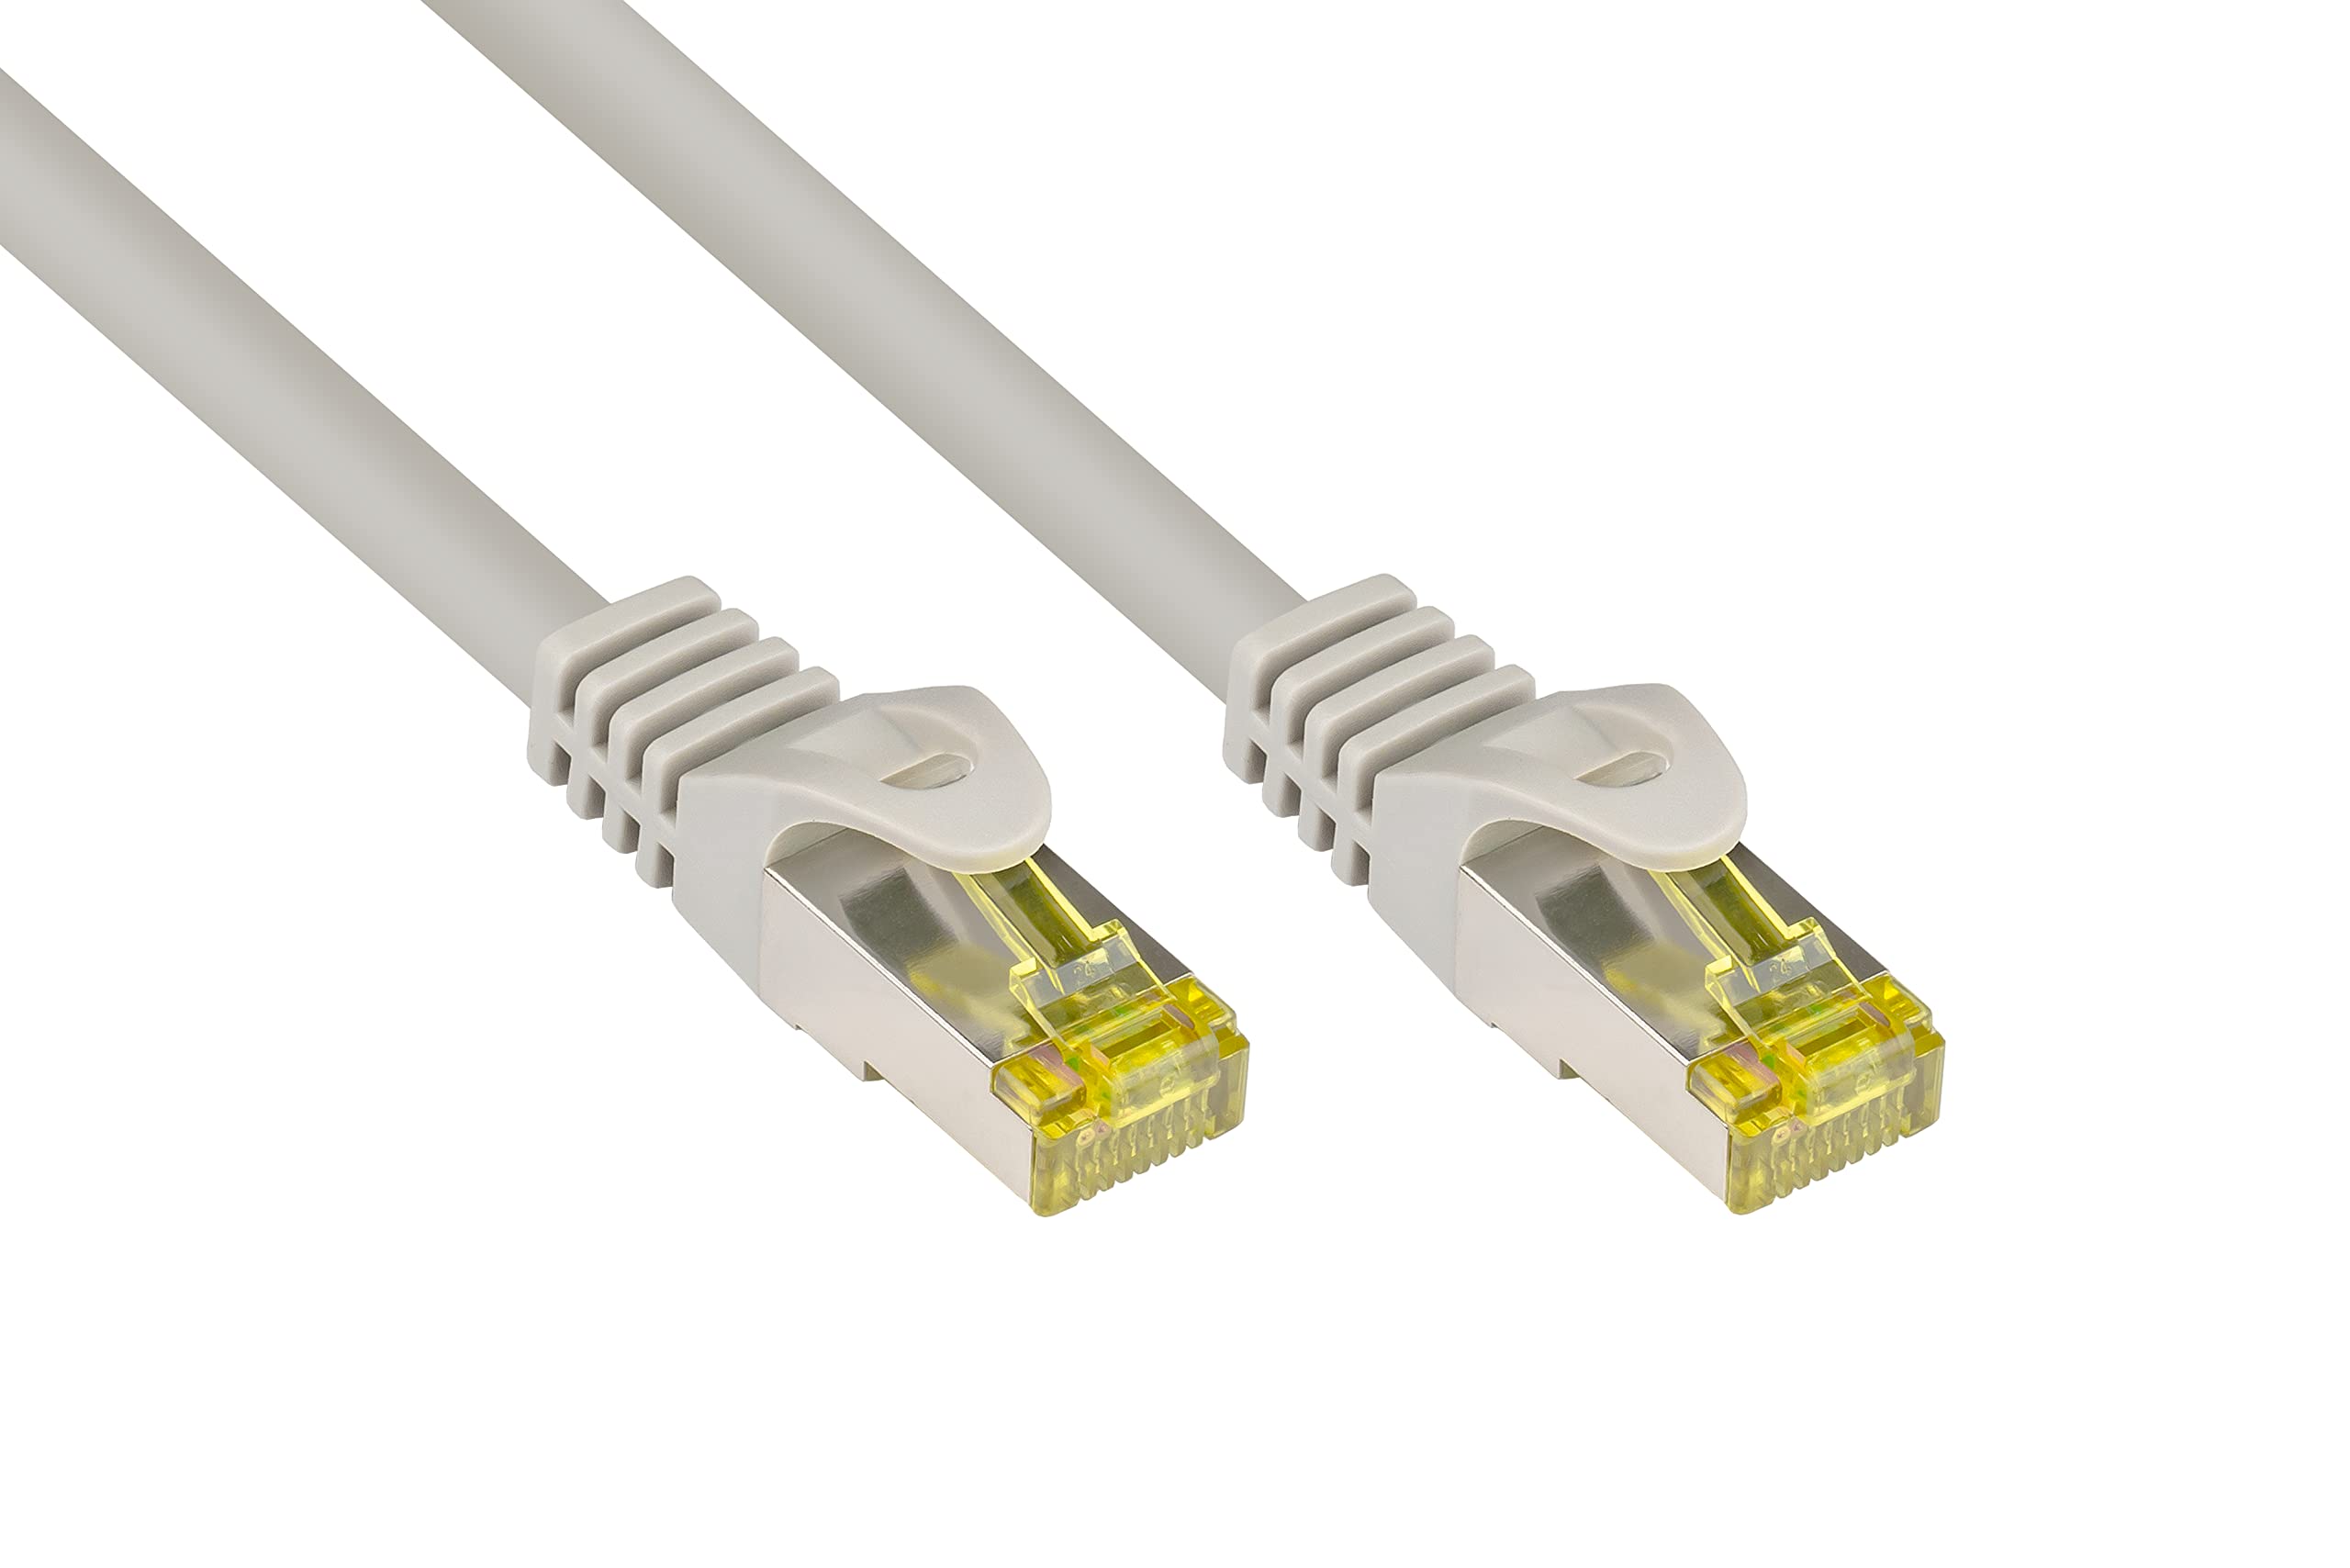 Good Connections RJ45 Ethernet LAN Patchkabel mit Cat. 7 Rohkabel und Rastnasenschutz RNS, S/FTP, PiMF, halogenfrei, 500MHz, OFC, 10-Gigabit-fähig (10/100/1000/10000-Base-T Ethernet Netzwerke) - z.B. für Patchpanel, Switch, Router, Modem - grau, 15 m